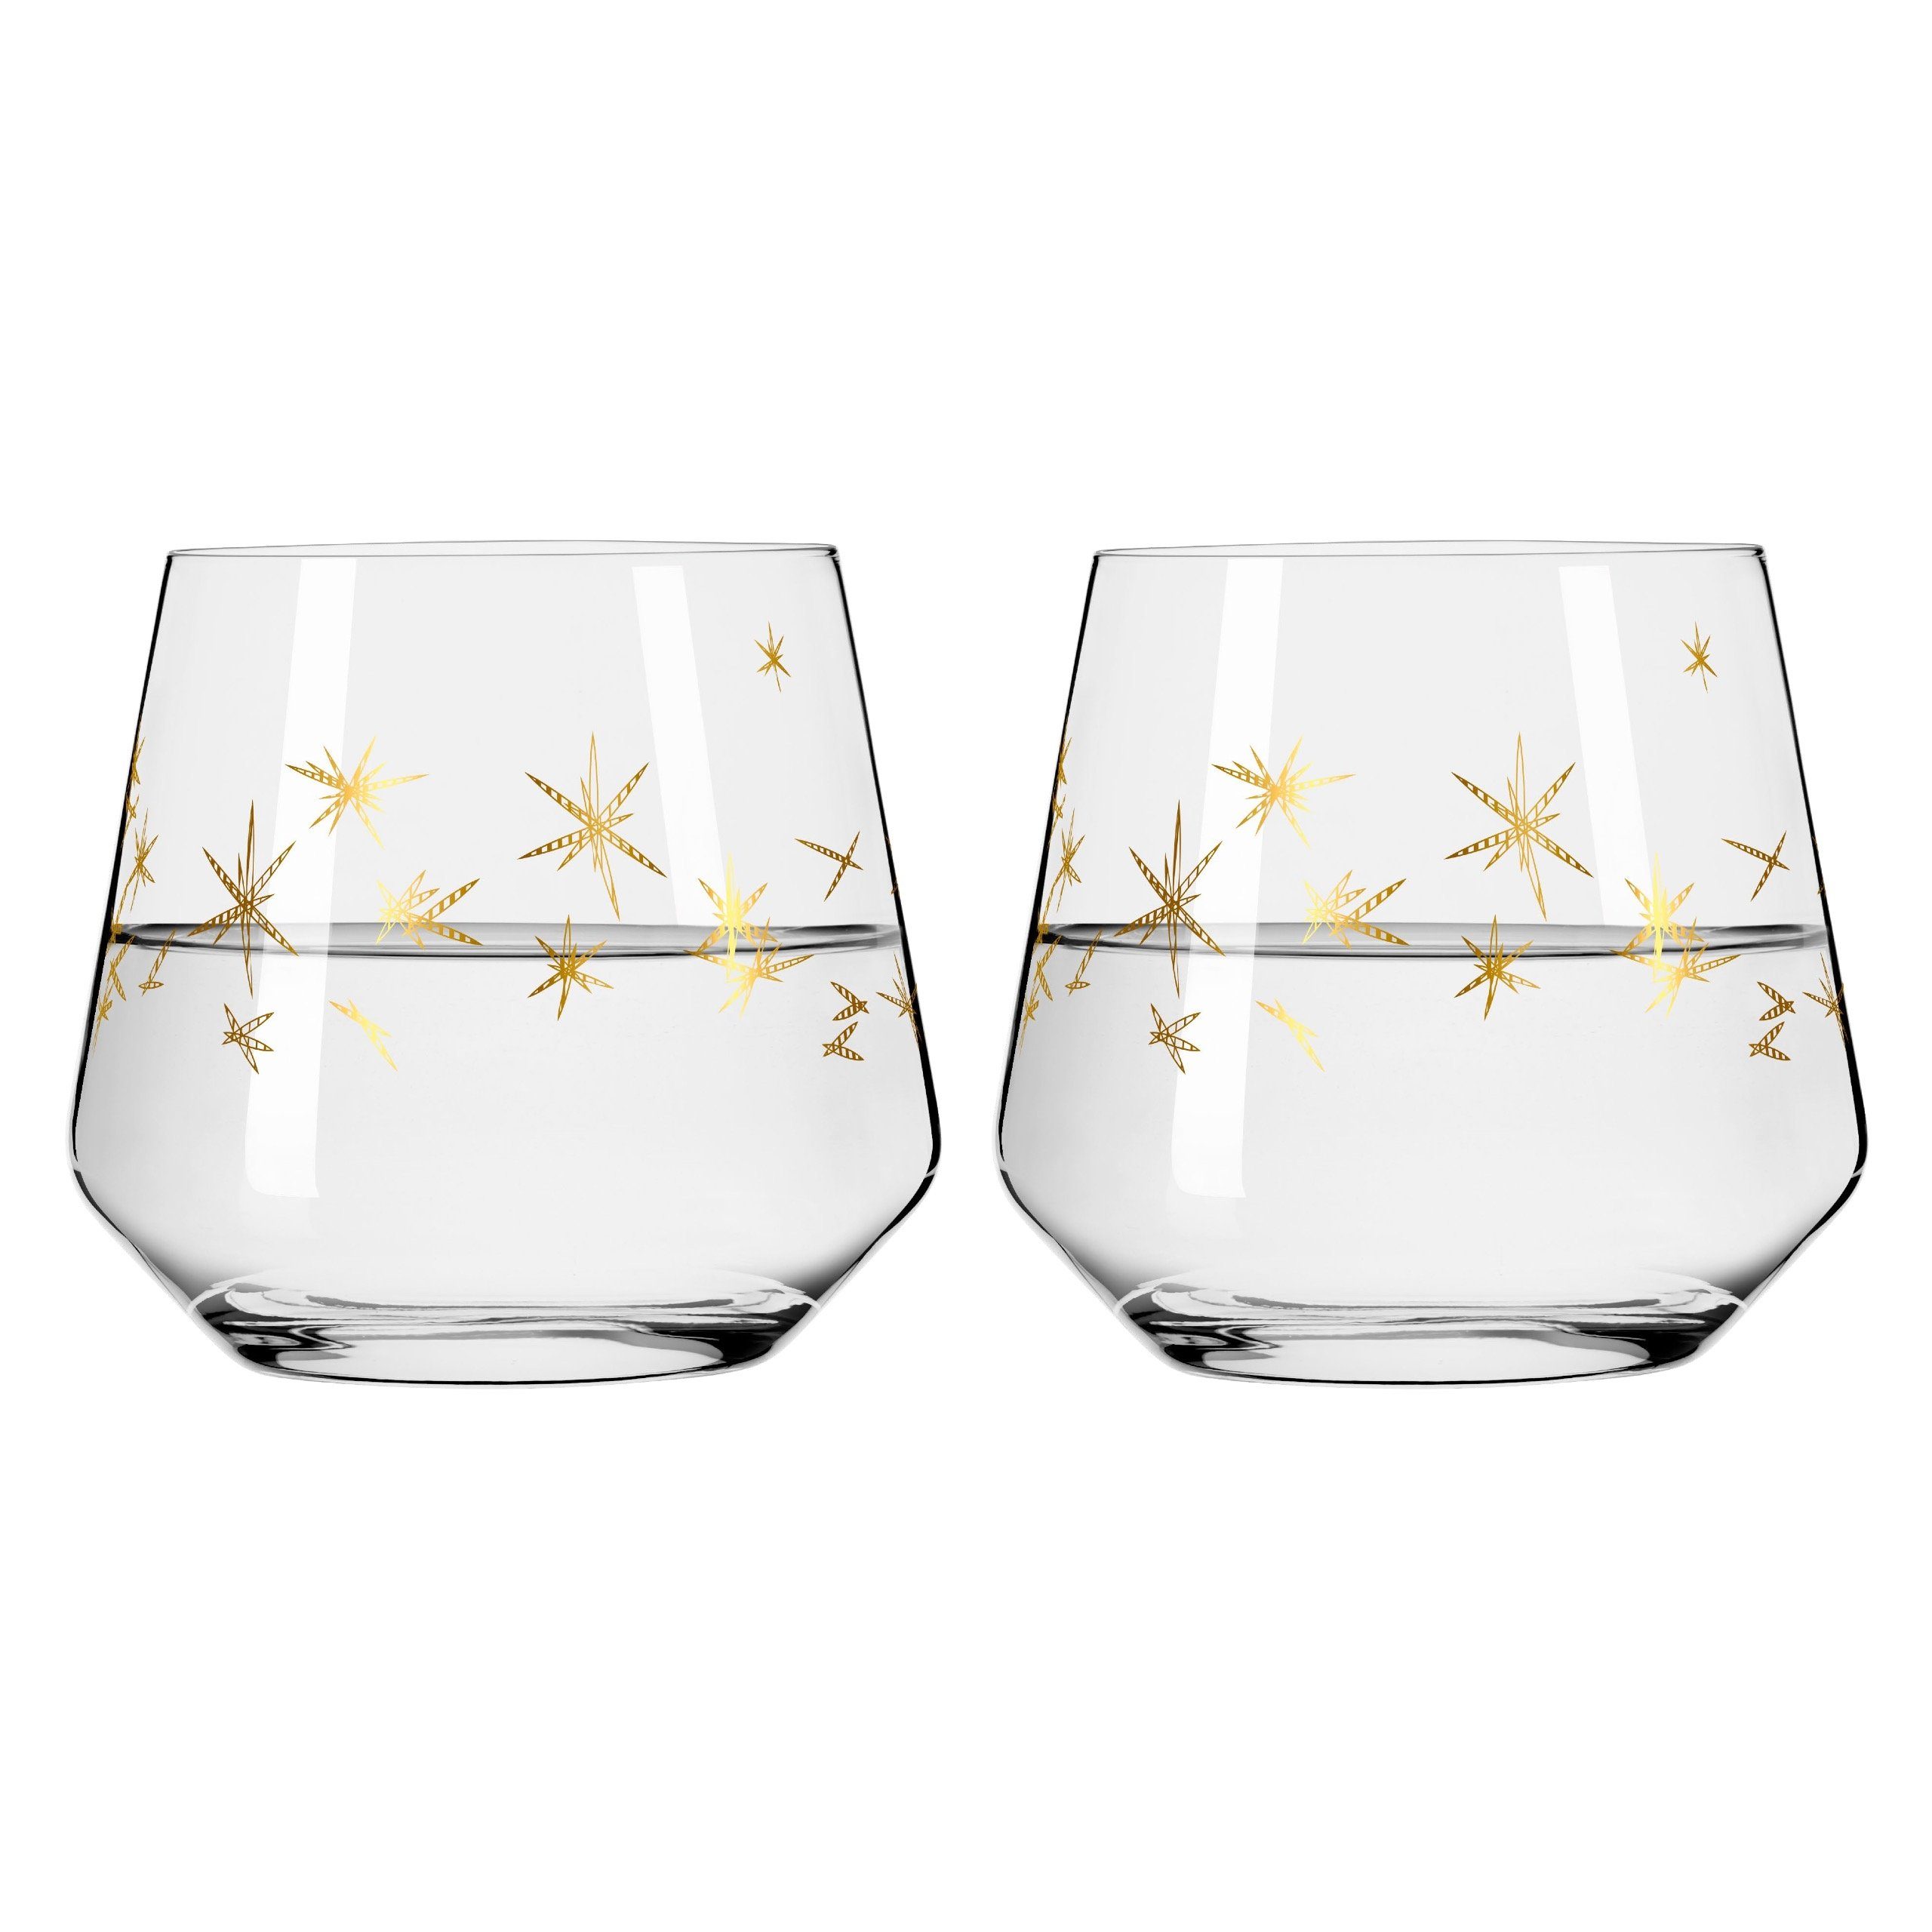 Ritzenhoff Longdrinkglas Celebration Deluxe, Kristallglas